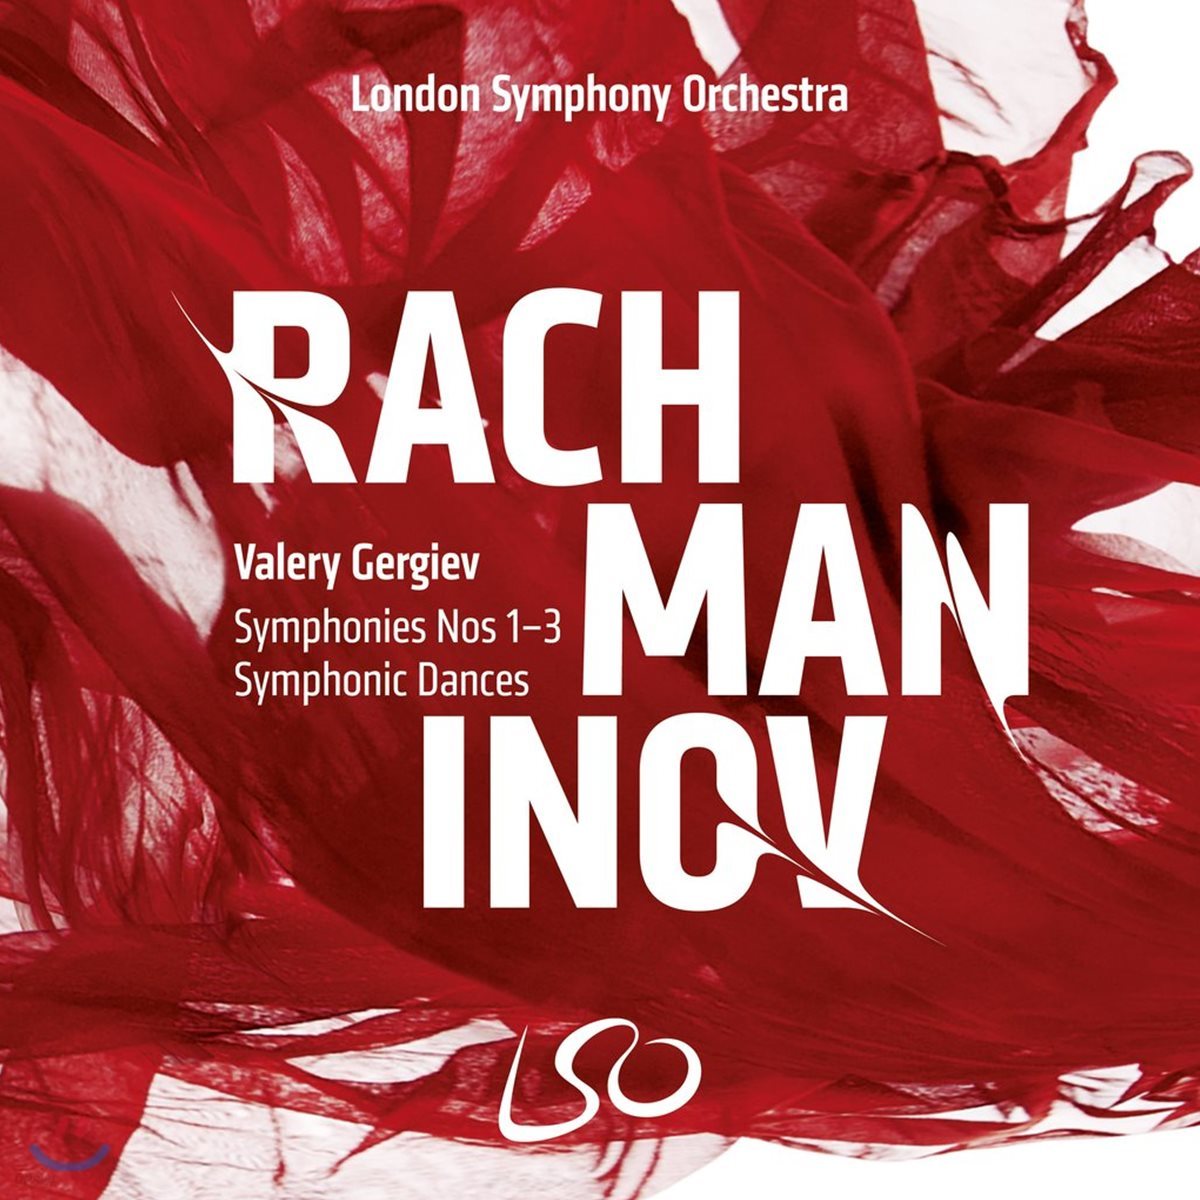 Valery Gergiev 라흐마니노프: 교향곡 전곡, 교향적 춤곡 (Rachmaninov: Symphonies Nos 1-3, Symphonic Dances)